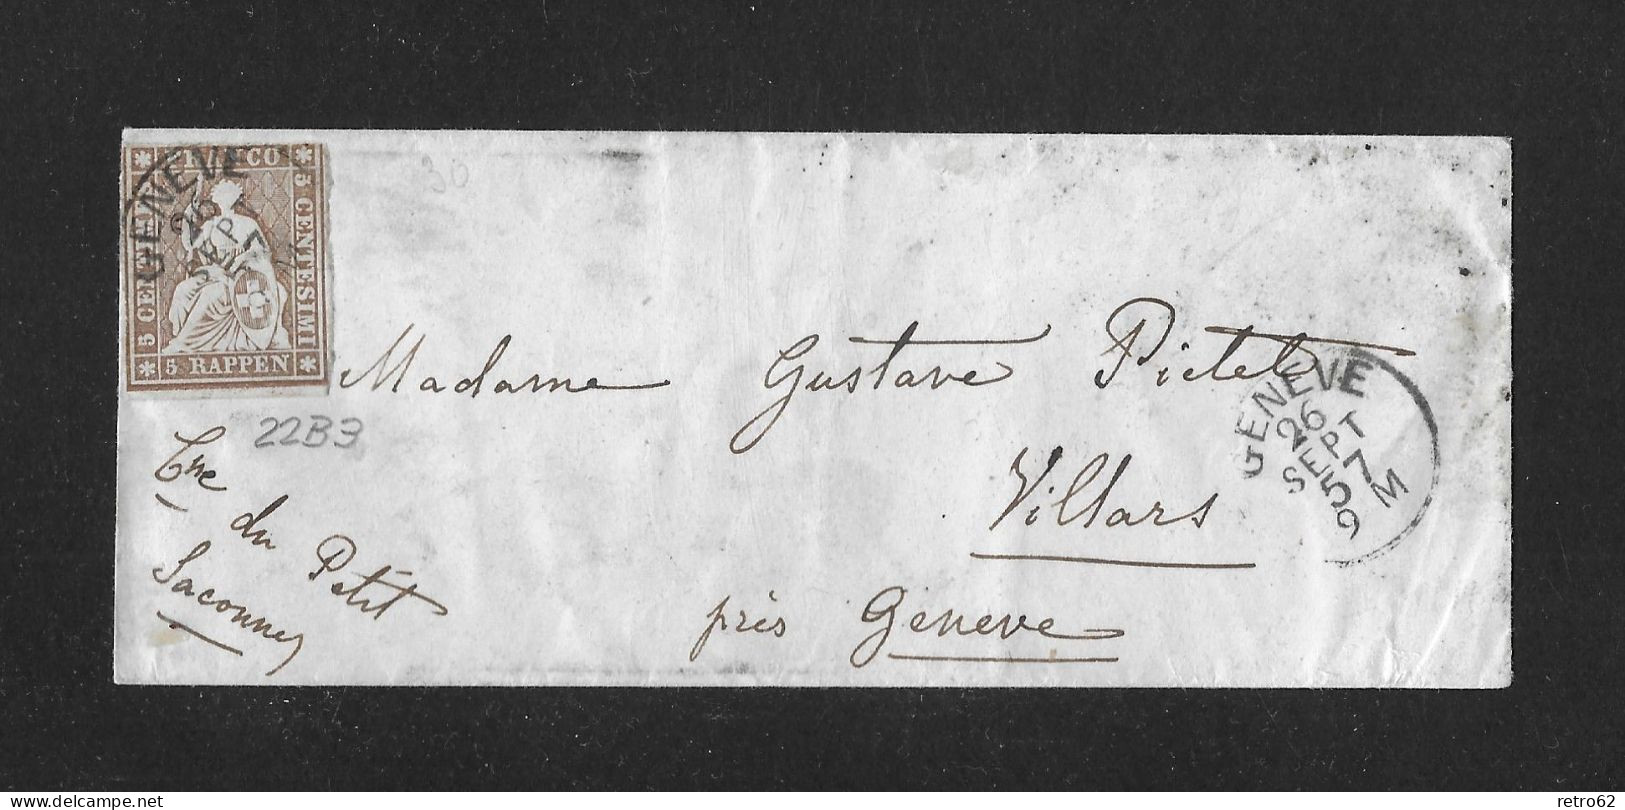 1857 HEIMAT GENÈVE ► Briefumschlag Von Genève Nach Villars    ►SBK-22B3 Grnève 26 SEPT 57 Guter Schnitt◄ - Briefe U. Dokumente